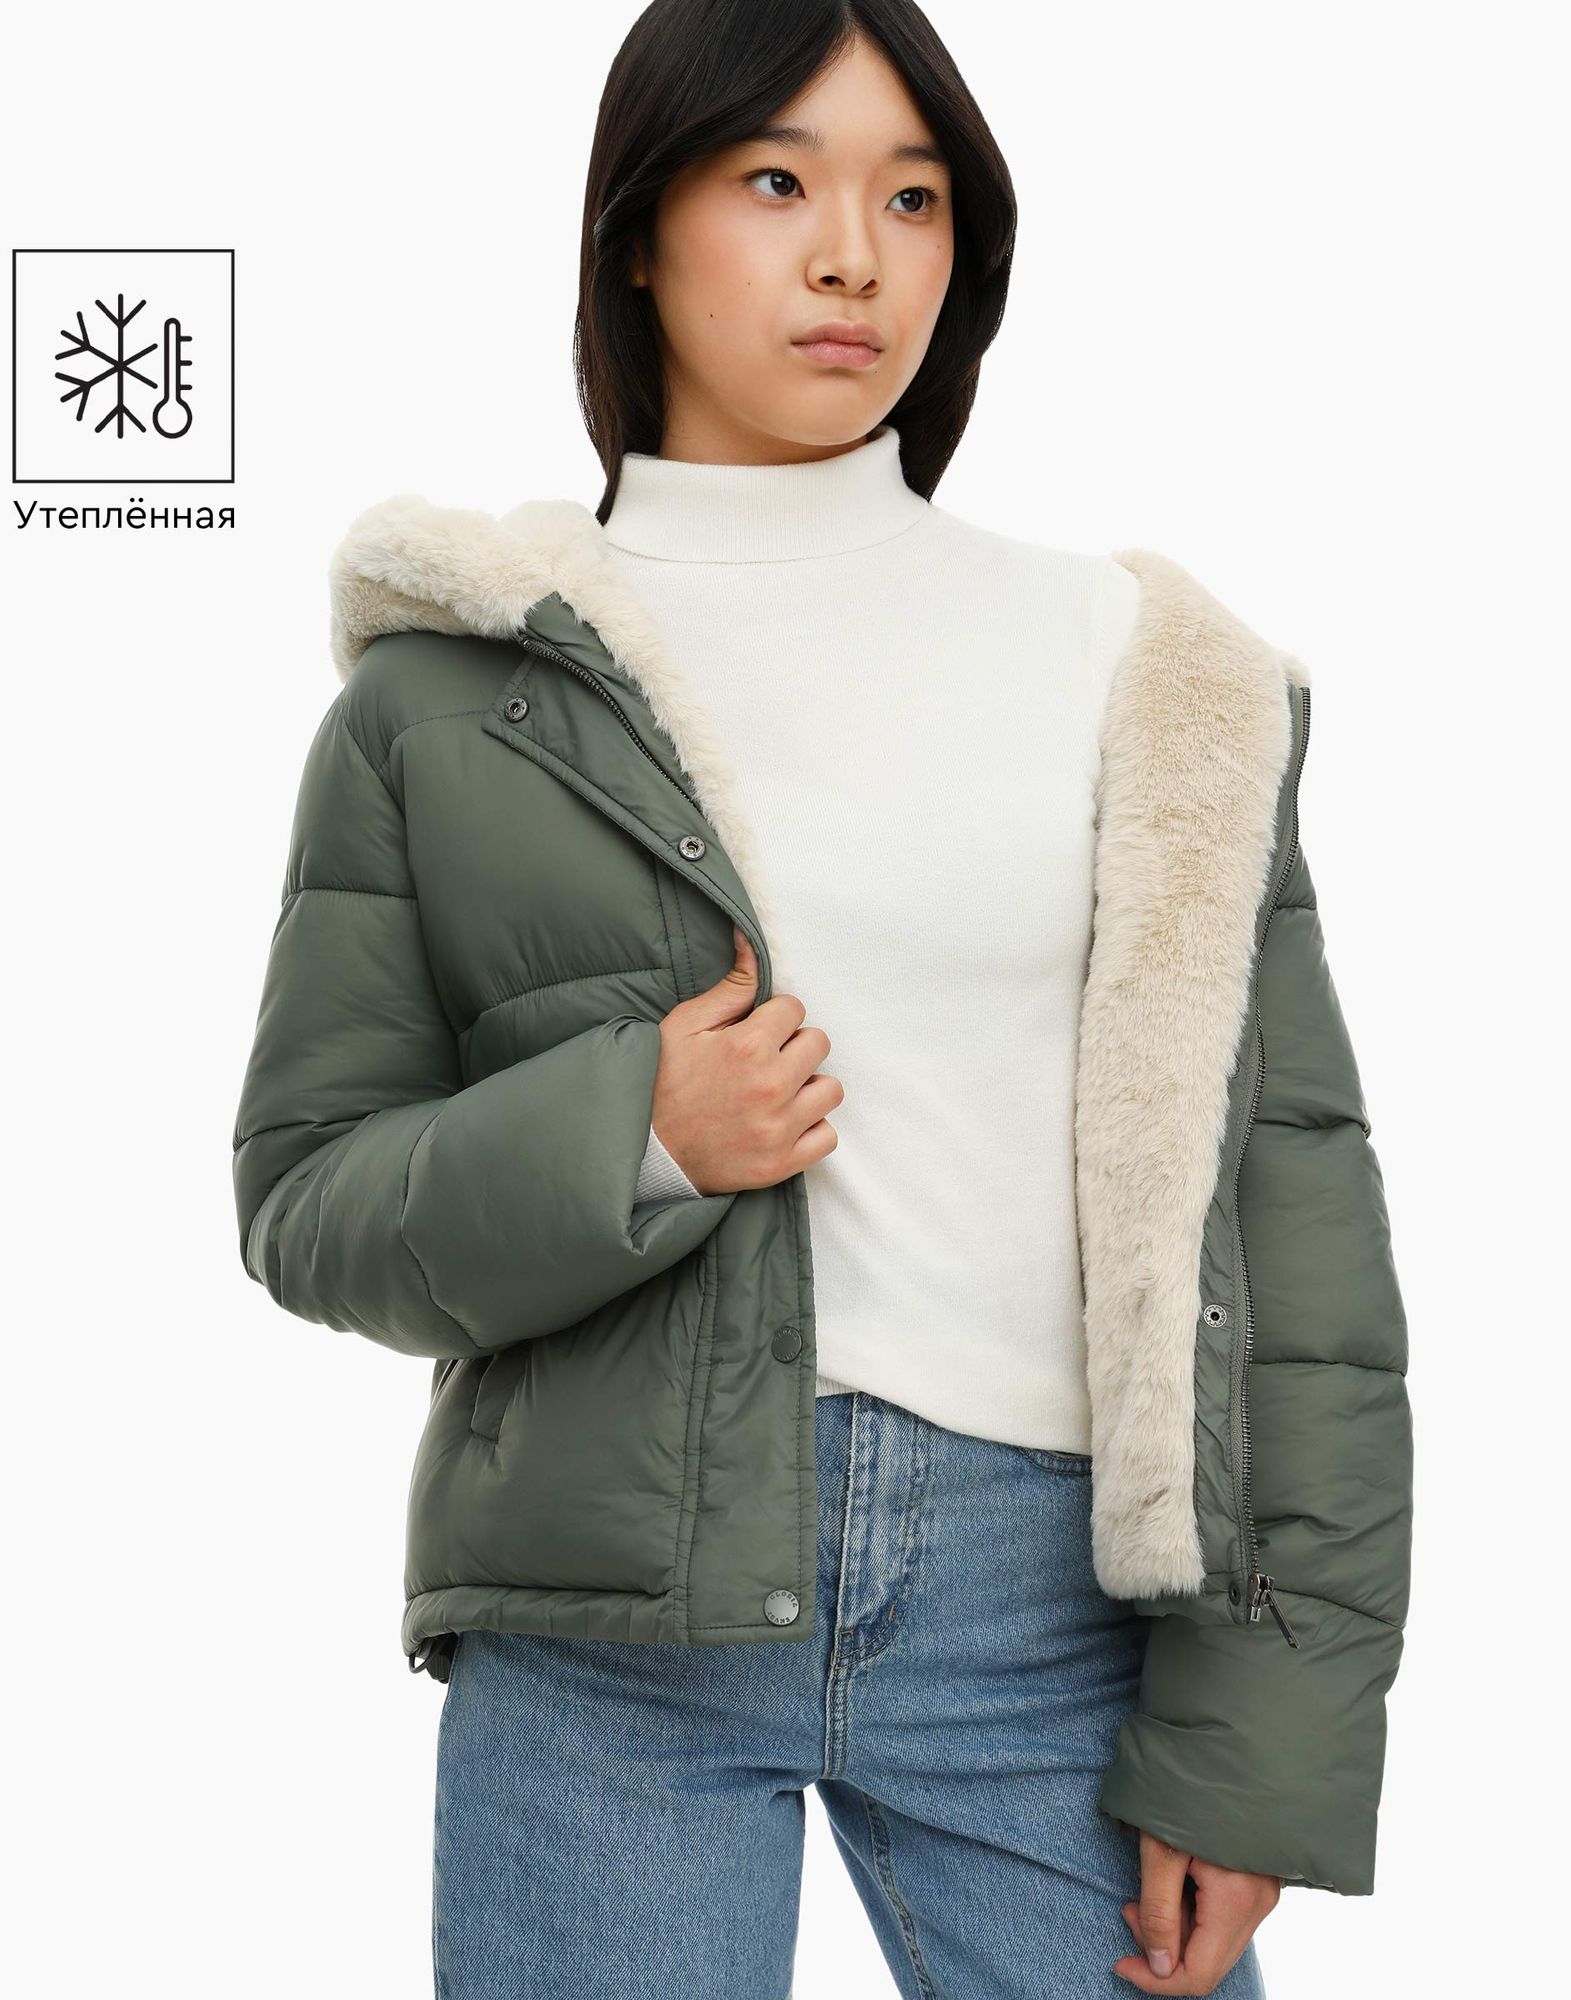 Хаки утеплённая куртка с экомехом для девочки-0